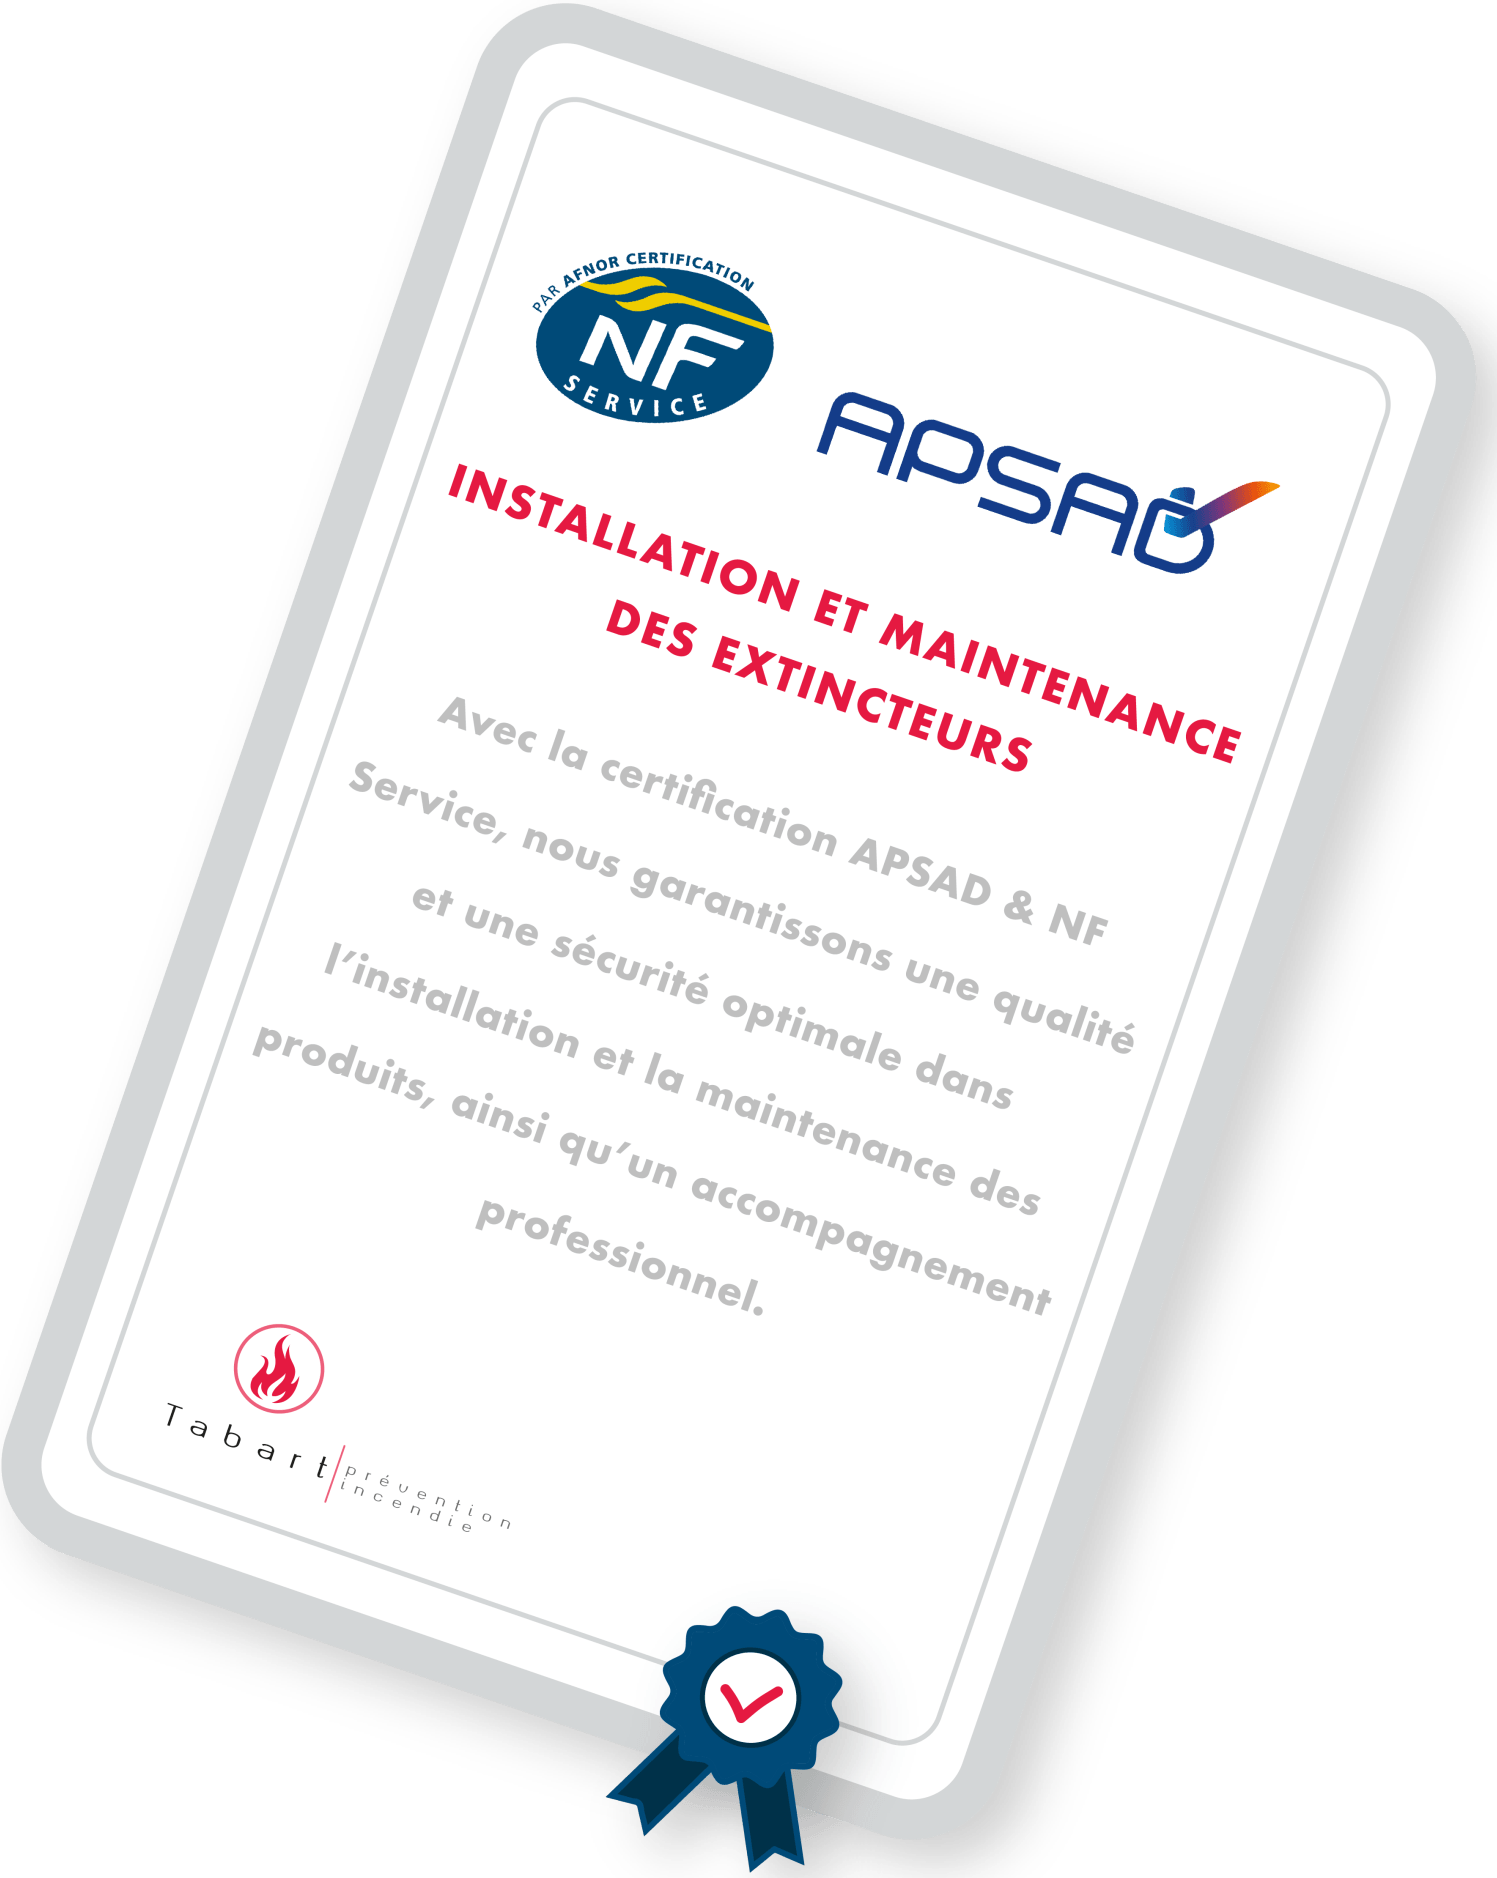 Tabart Paris est certifiée NF et APSAD